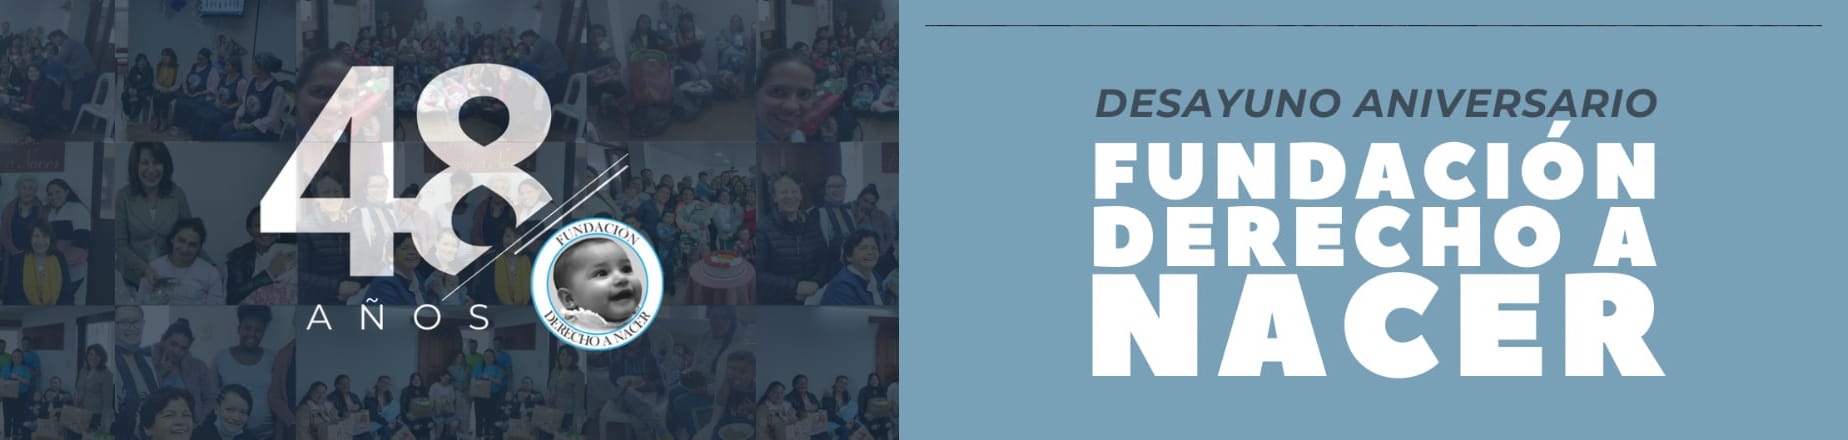 Galería de fotos y videos Desayuno Aniversario 48 años Fundación Derecho a Nacer